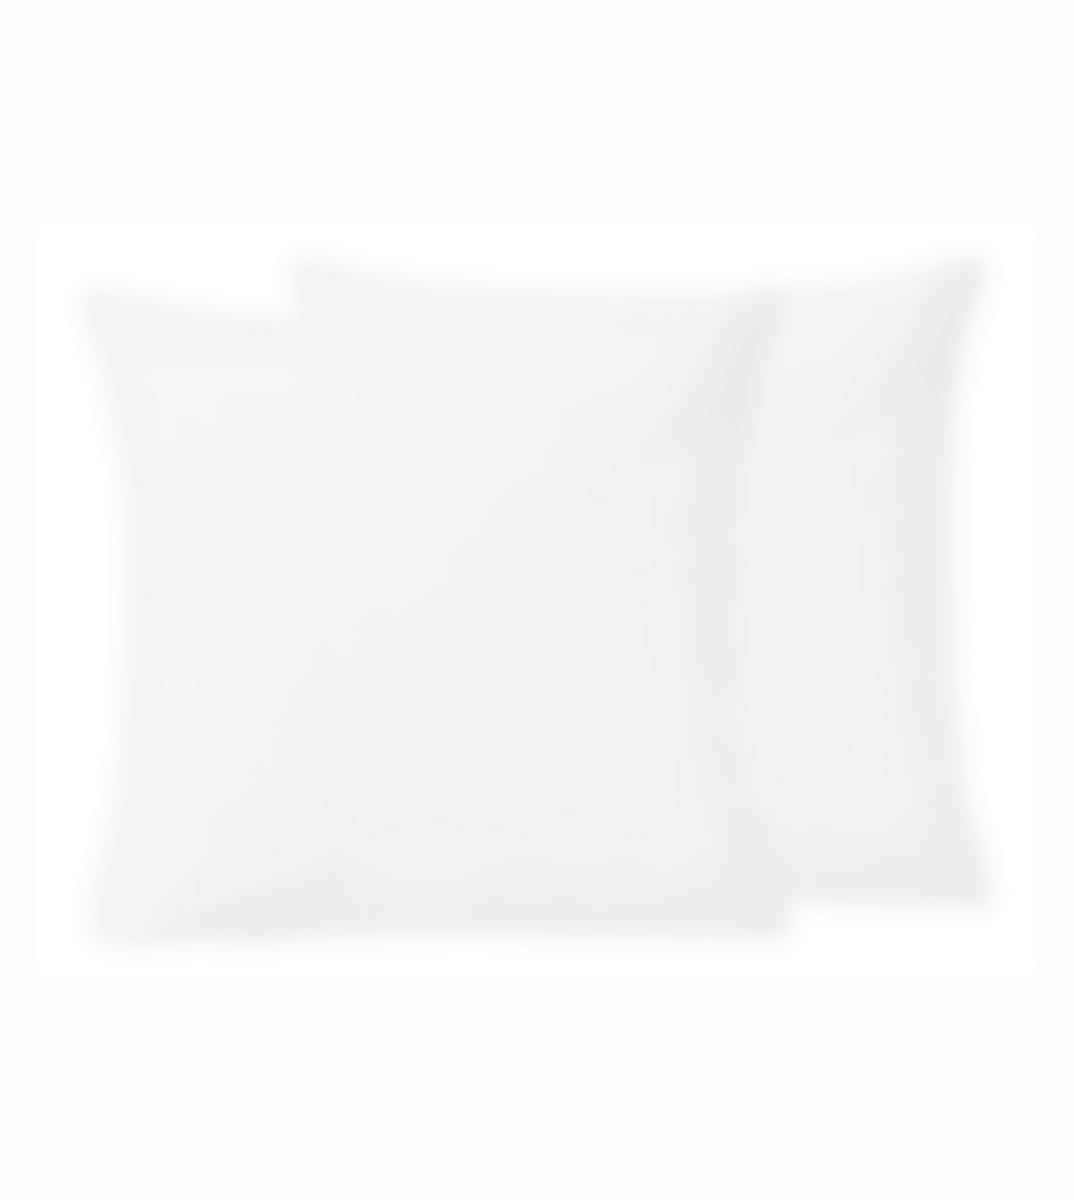 Sleepnight kussensloop wit perkalkatoen set van 2 65 x 65 cm